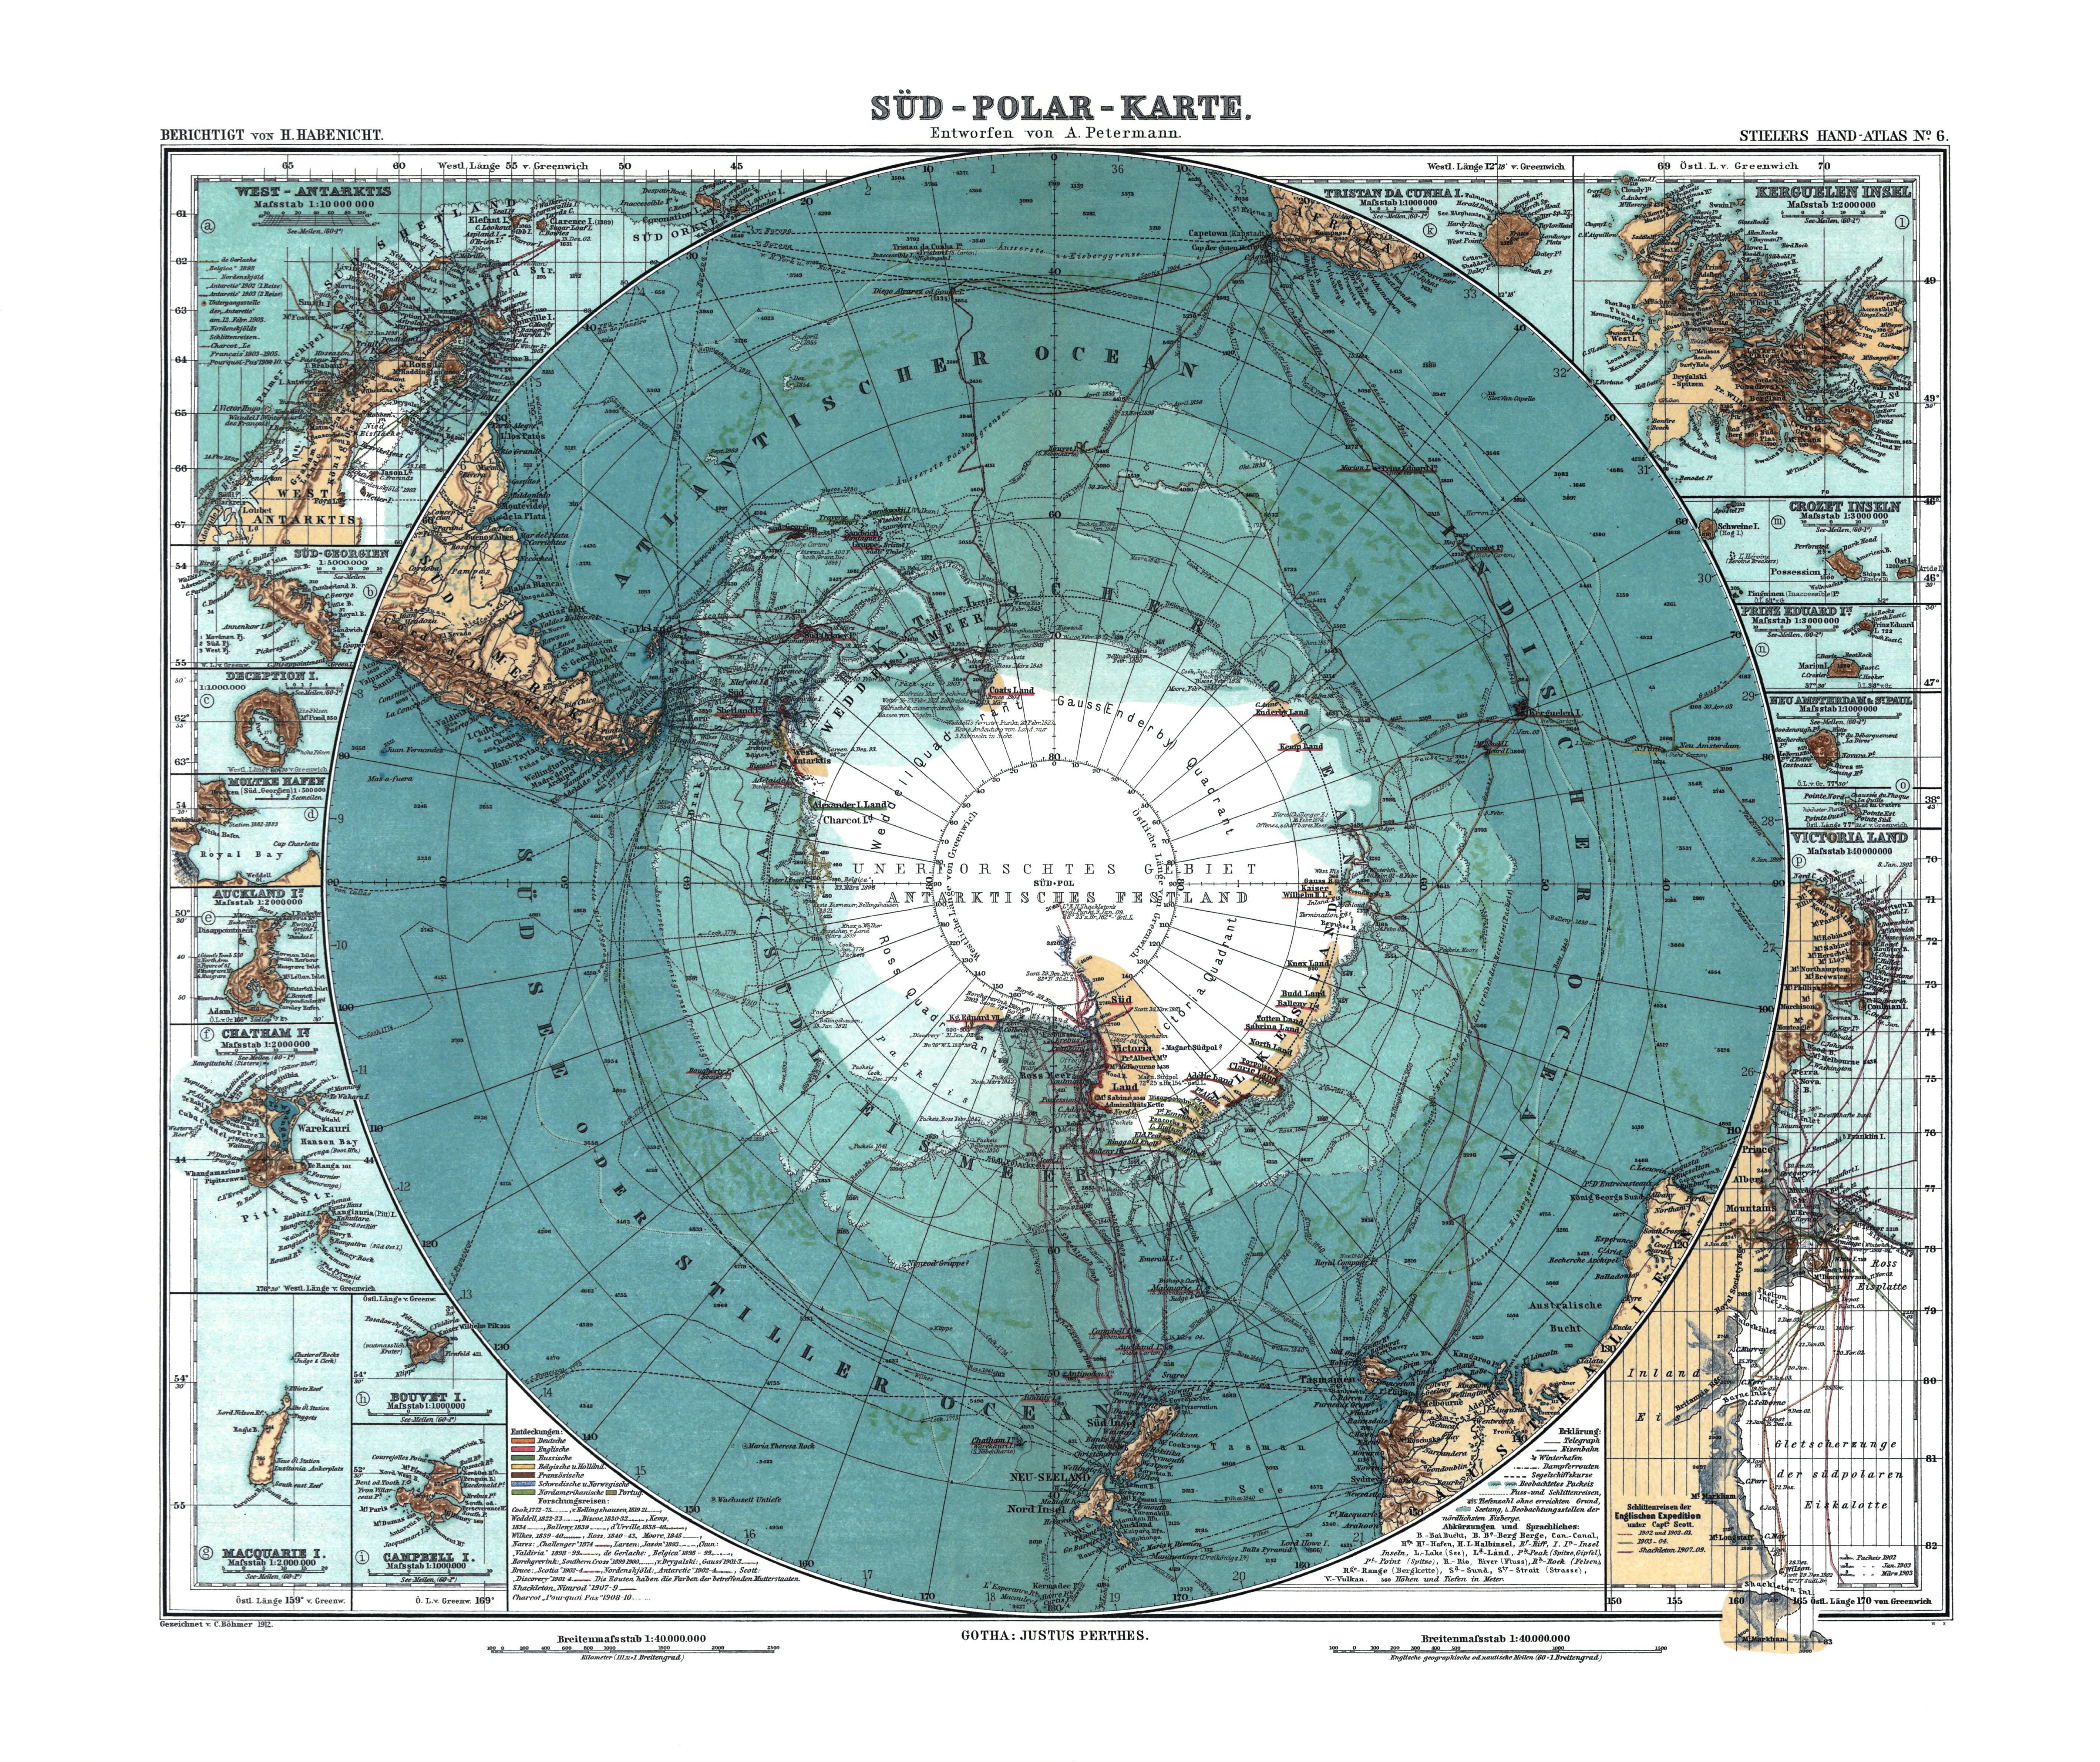 https://maps.pastmaps.com/antarctica/antarctica-1912.jpg